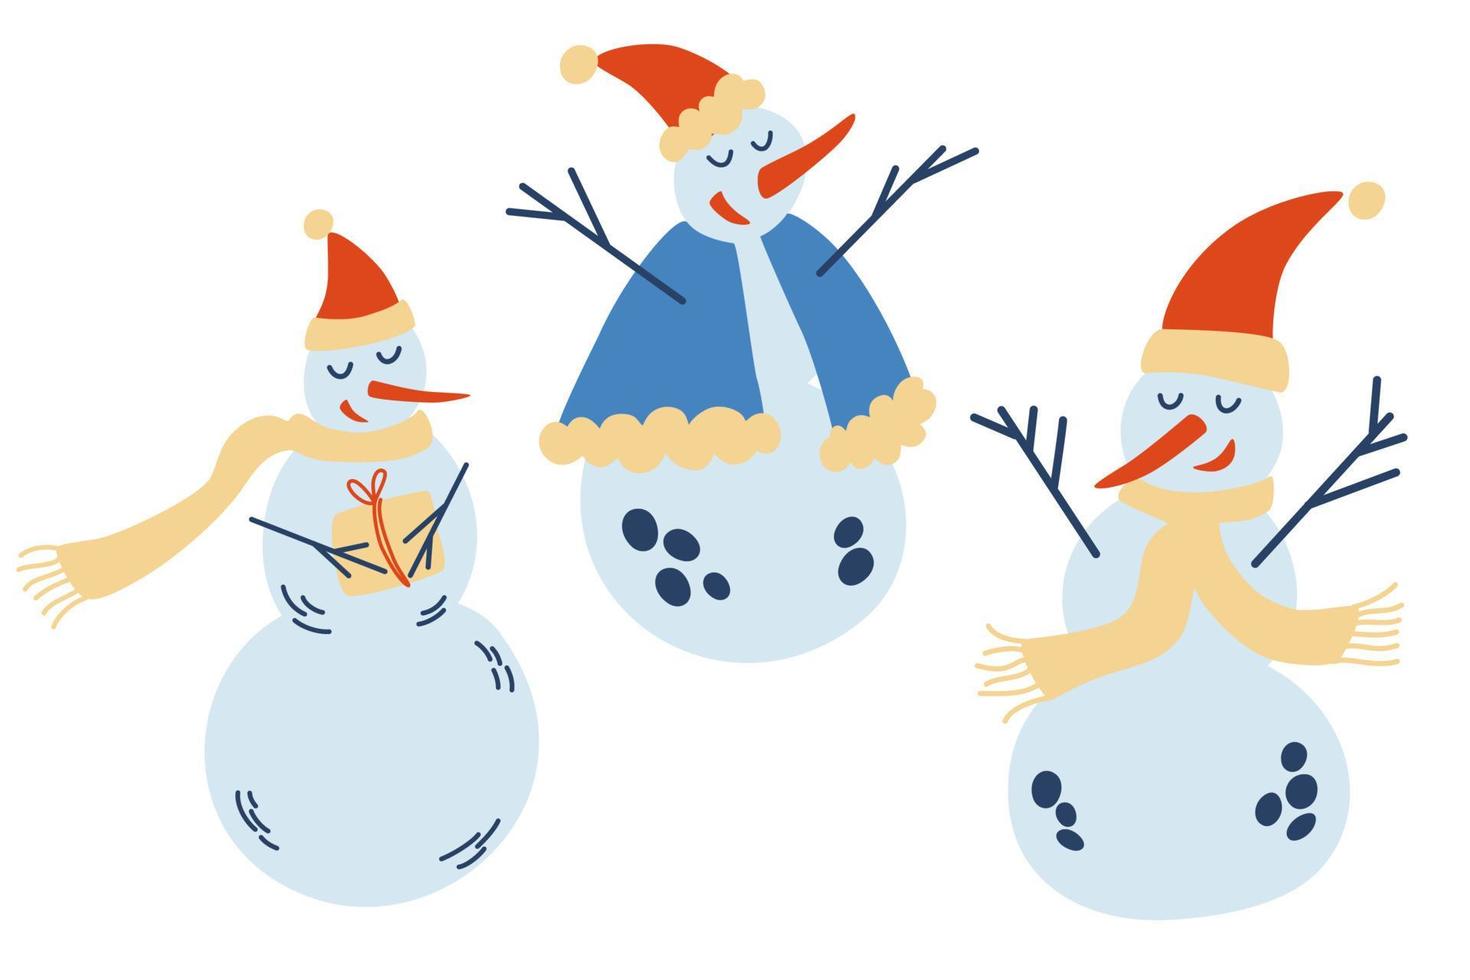 süße weihnachtsschneemännerkollektion. lustige Schneemänner in verschiedenen Posen, Mützen und Schals. Neujahrsmuster für Design zu einem Weihnachtsthema. Vektor-Winter-Illustration. vektor